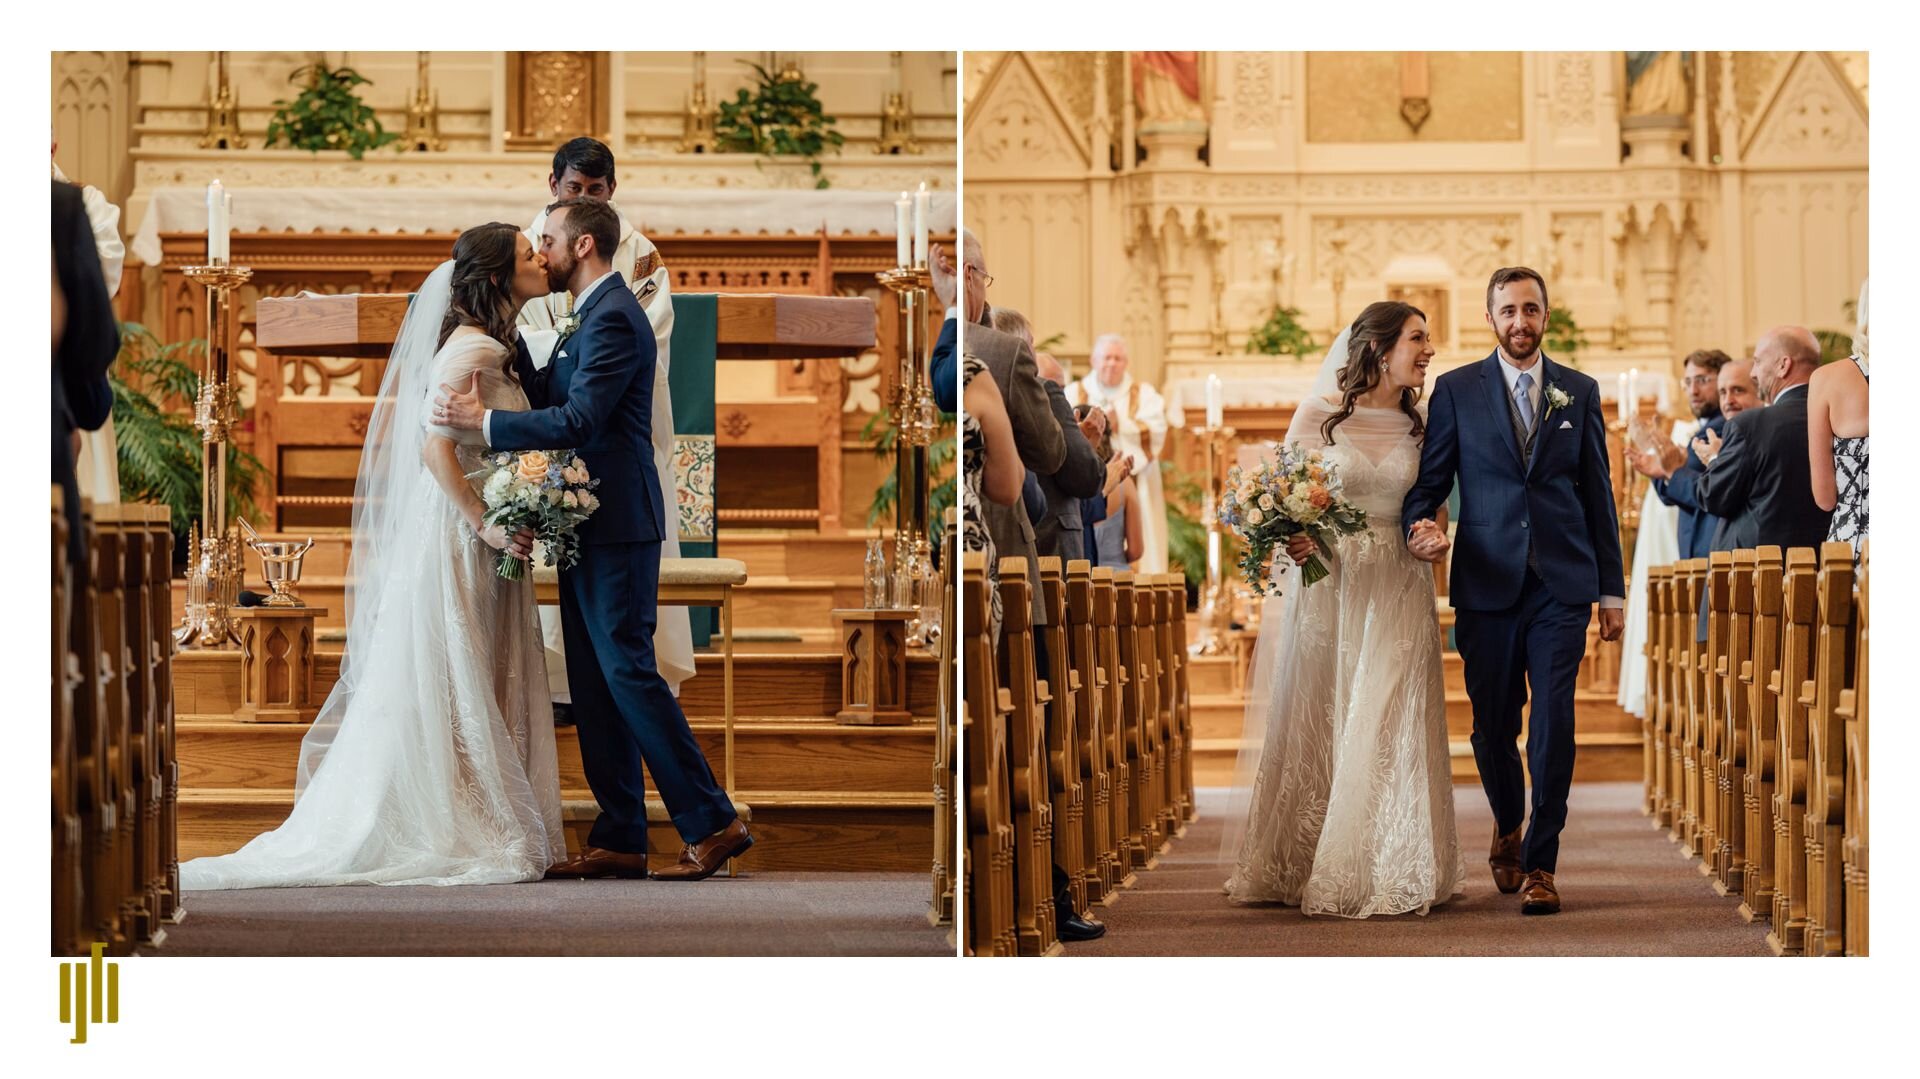 Caitlin and Jarrod - Toledo wedding photographer-Grant Beachy 13.jpg